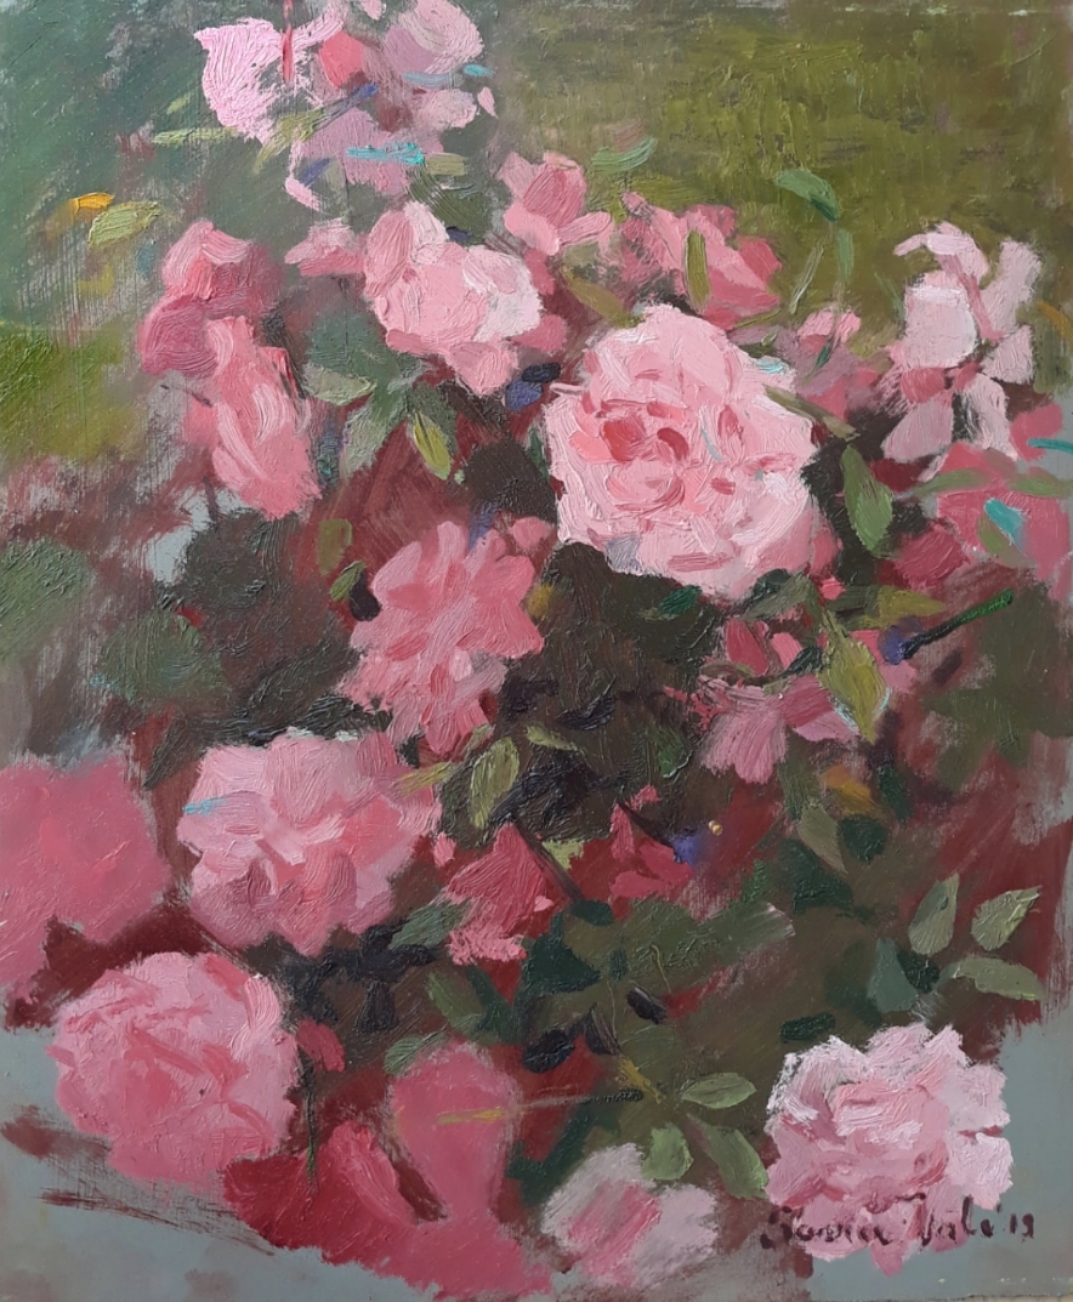 õlimaal "Roosad roosid" kunstnik Saara Väli realism maastik roosid